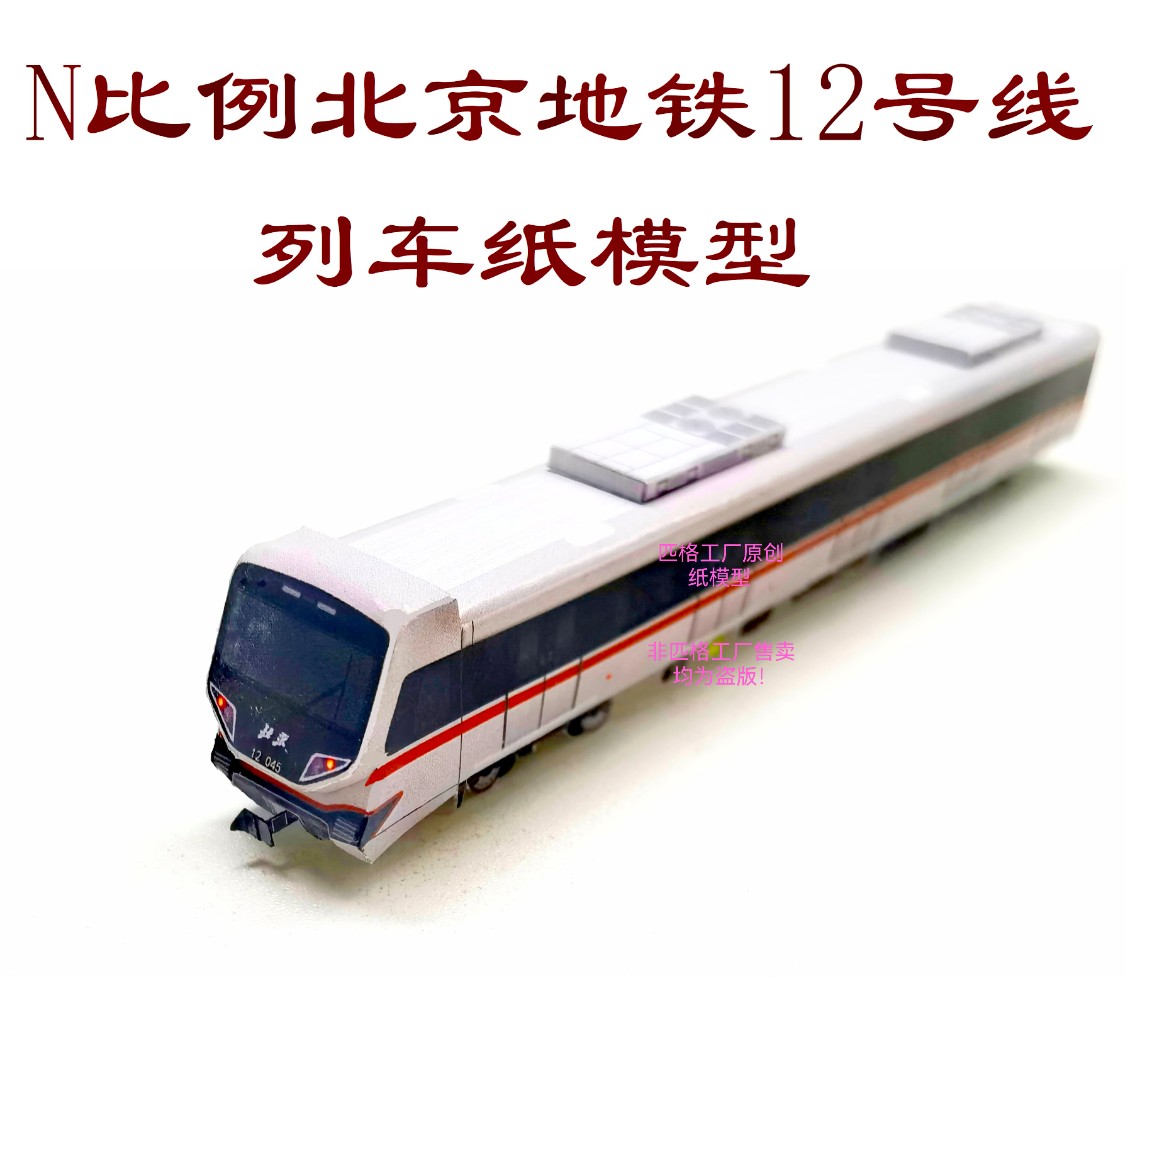 匹格工厂N比例北京地铁12号线列车模型3D纸模DIY铁路火车地铁模型